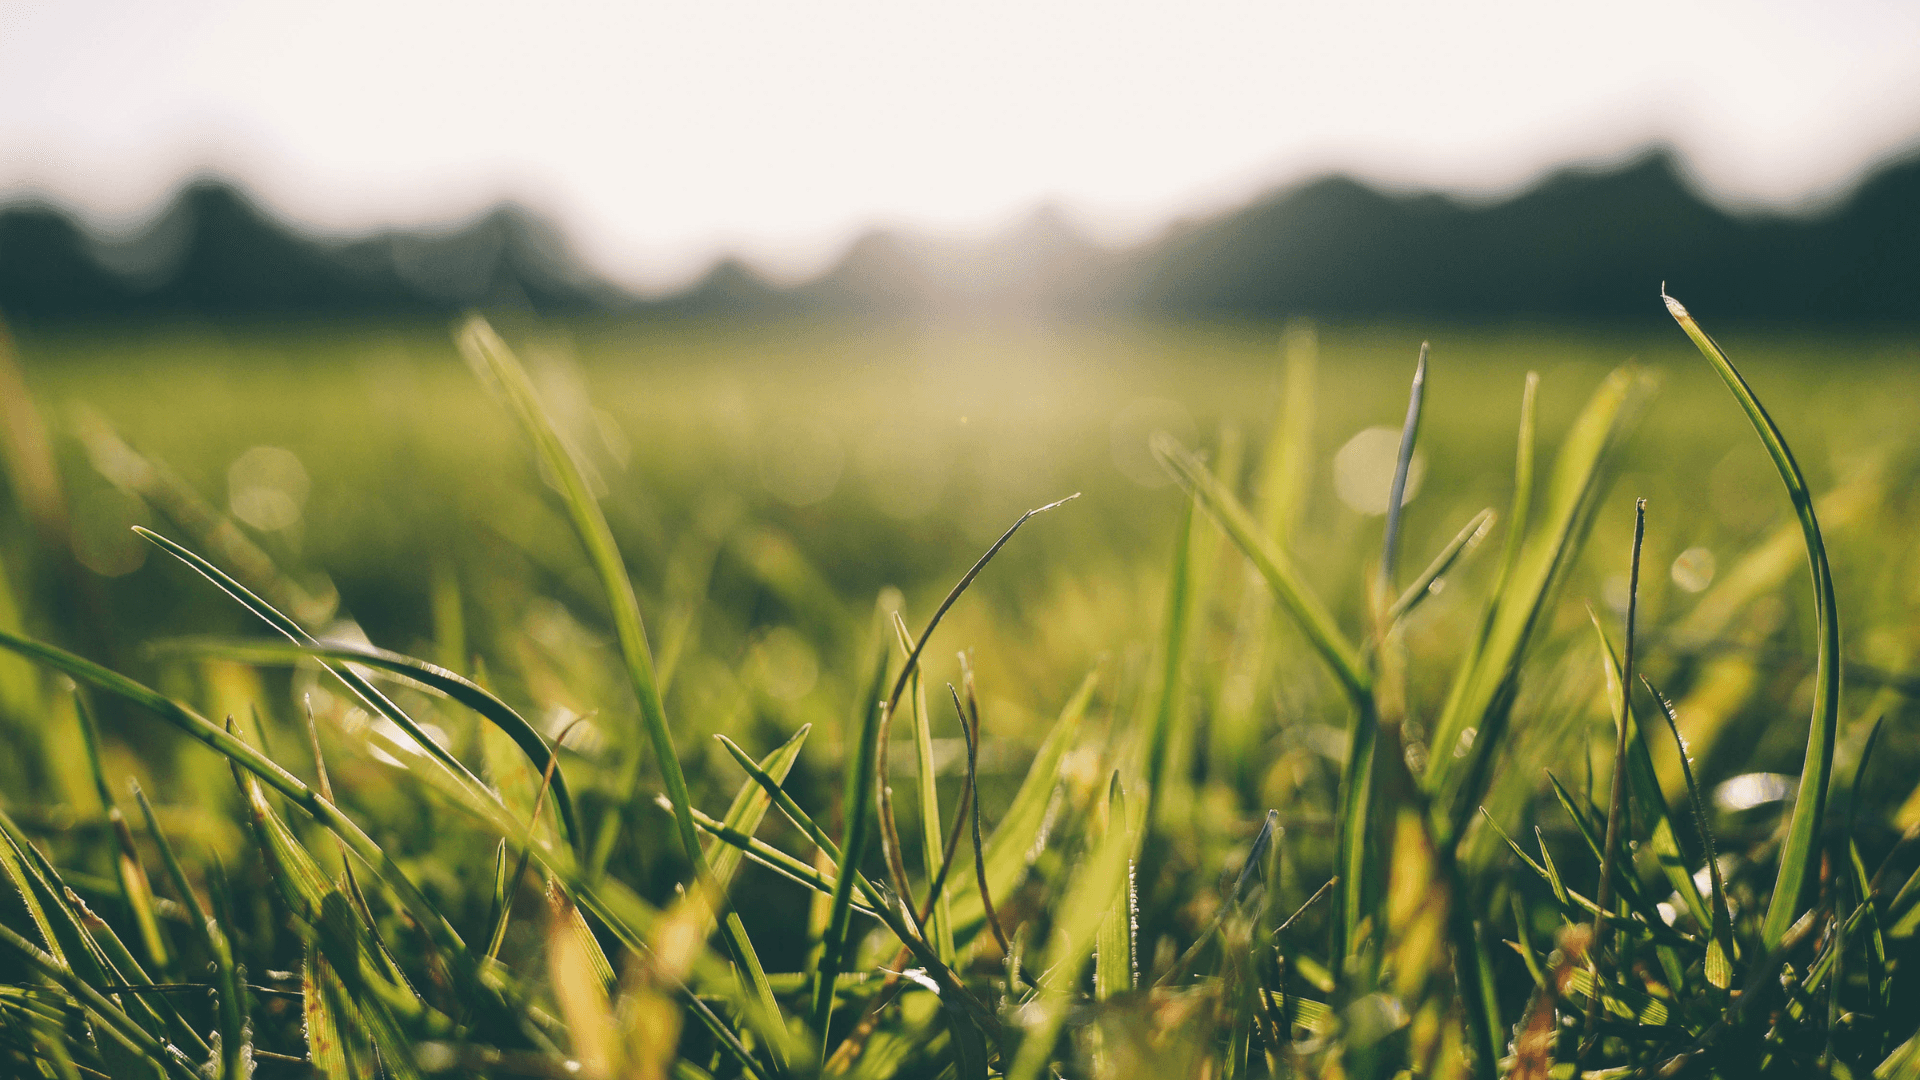 Sunlit Green Grass Field